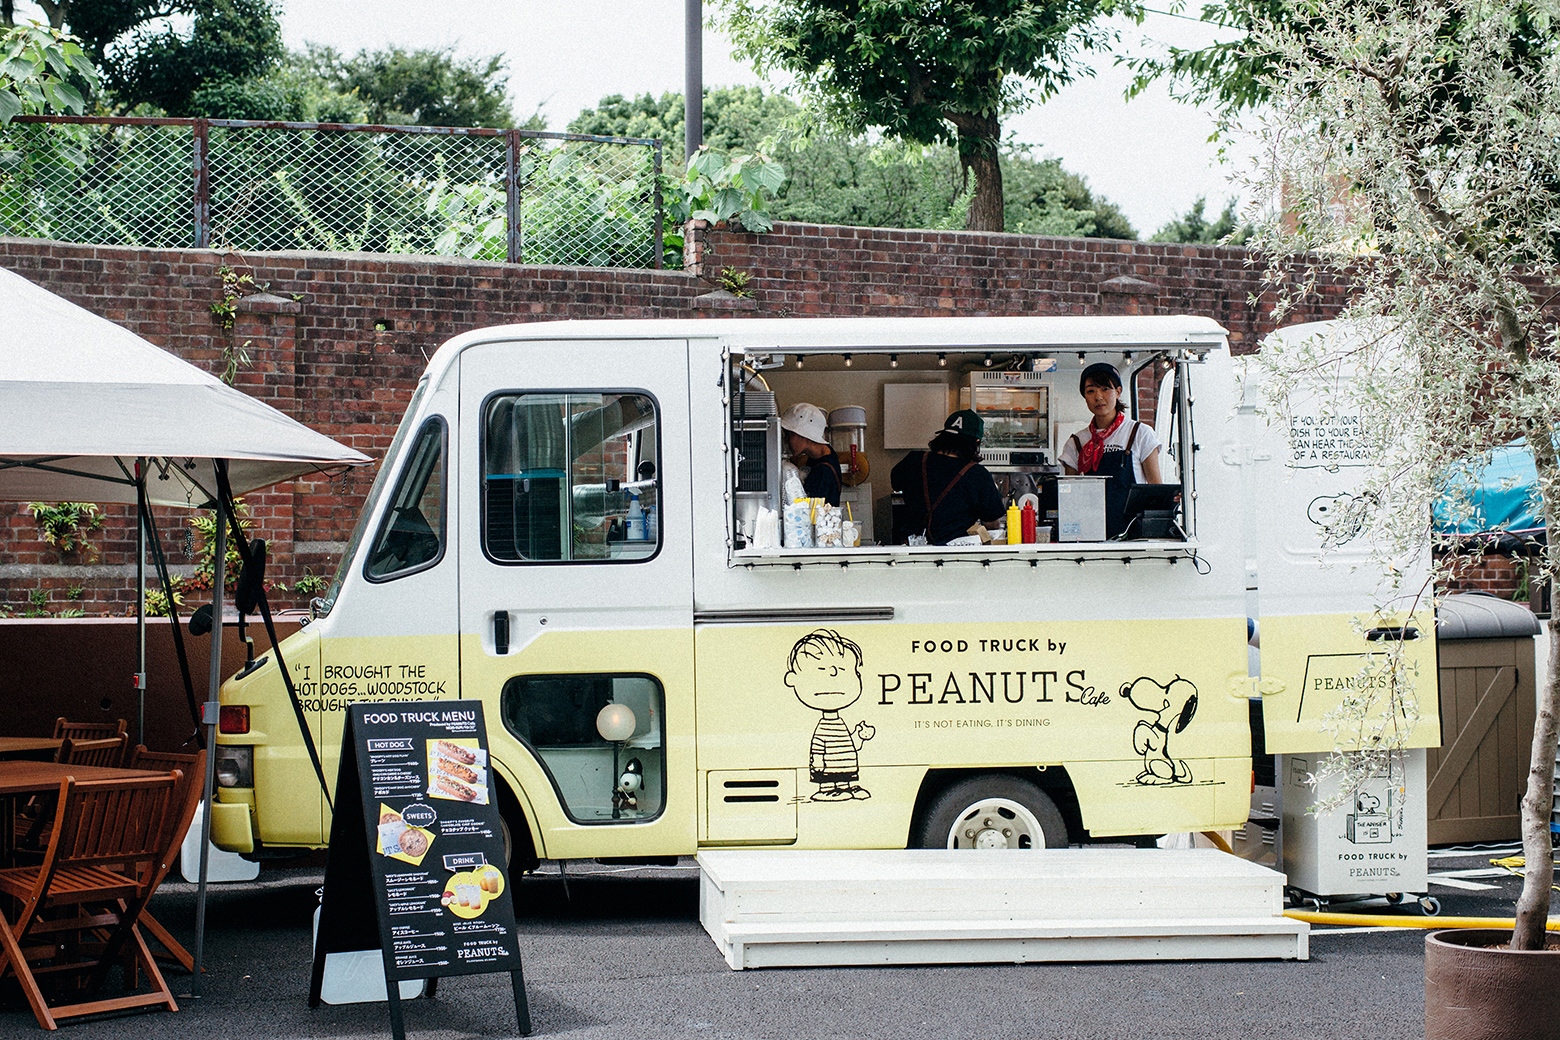 期間限定 スヌーピーのテーマカフェ Peanuts Cafe のフードトラックが 大阪 梅田のショッピングモールに8 7 金 から登場 株式会社ポトマックのプレスリリース